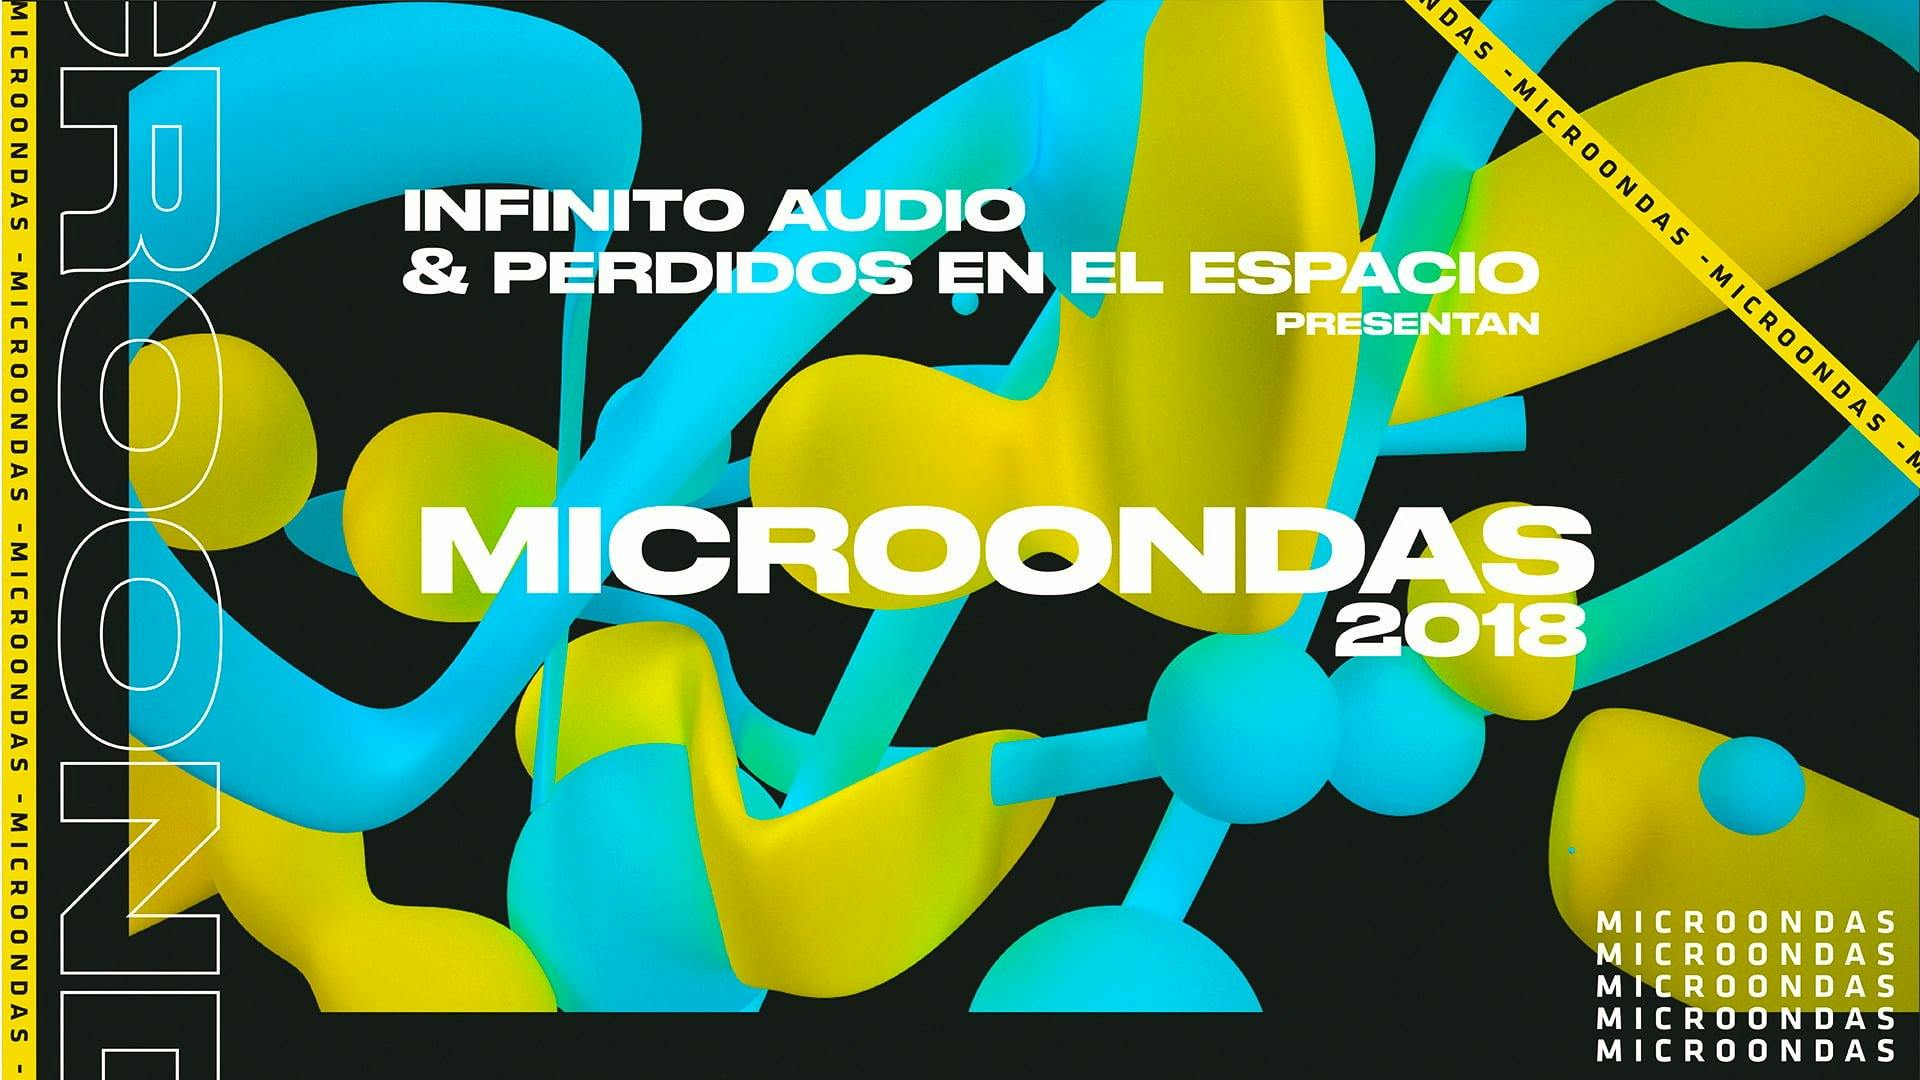 Infinito Audio & Perdidos en el Espacio presentan: Microondas 2018